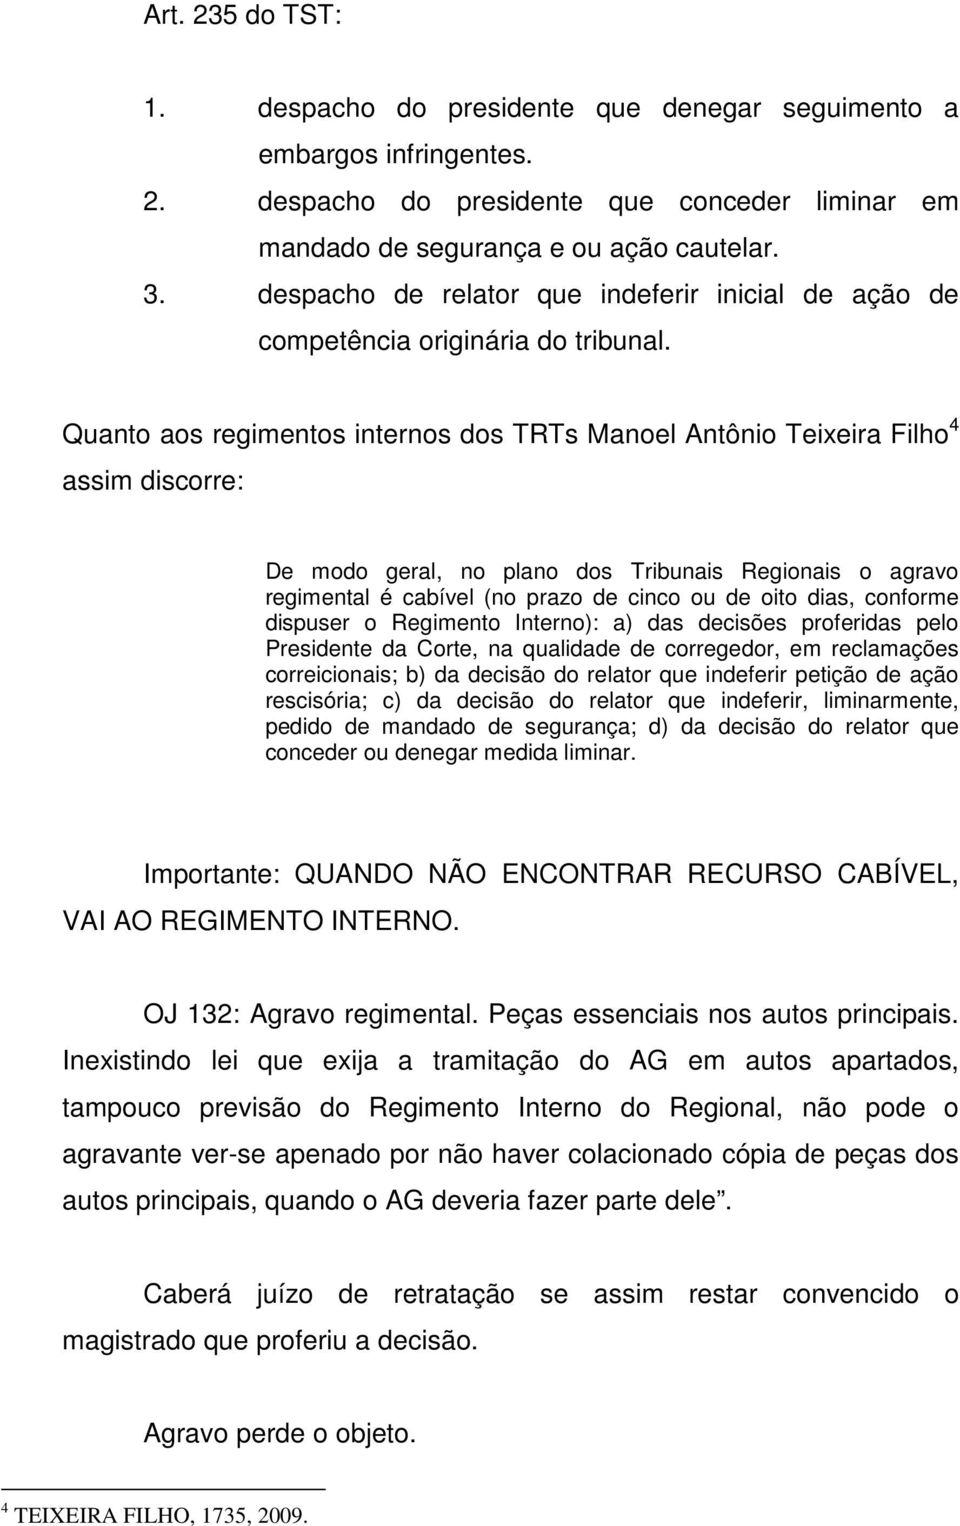 Quanto aos regimentos internos dos TRTs Manoel Antônio Teixeira Filho 4 assim discorre: De modo geral, no plano dos Tribunais Regionais o agravo regimental é cabível (no prazo de cinco ou de oito